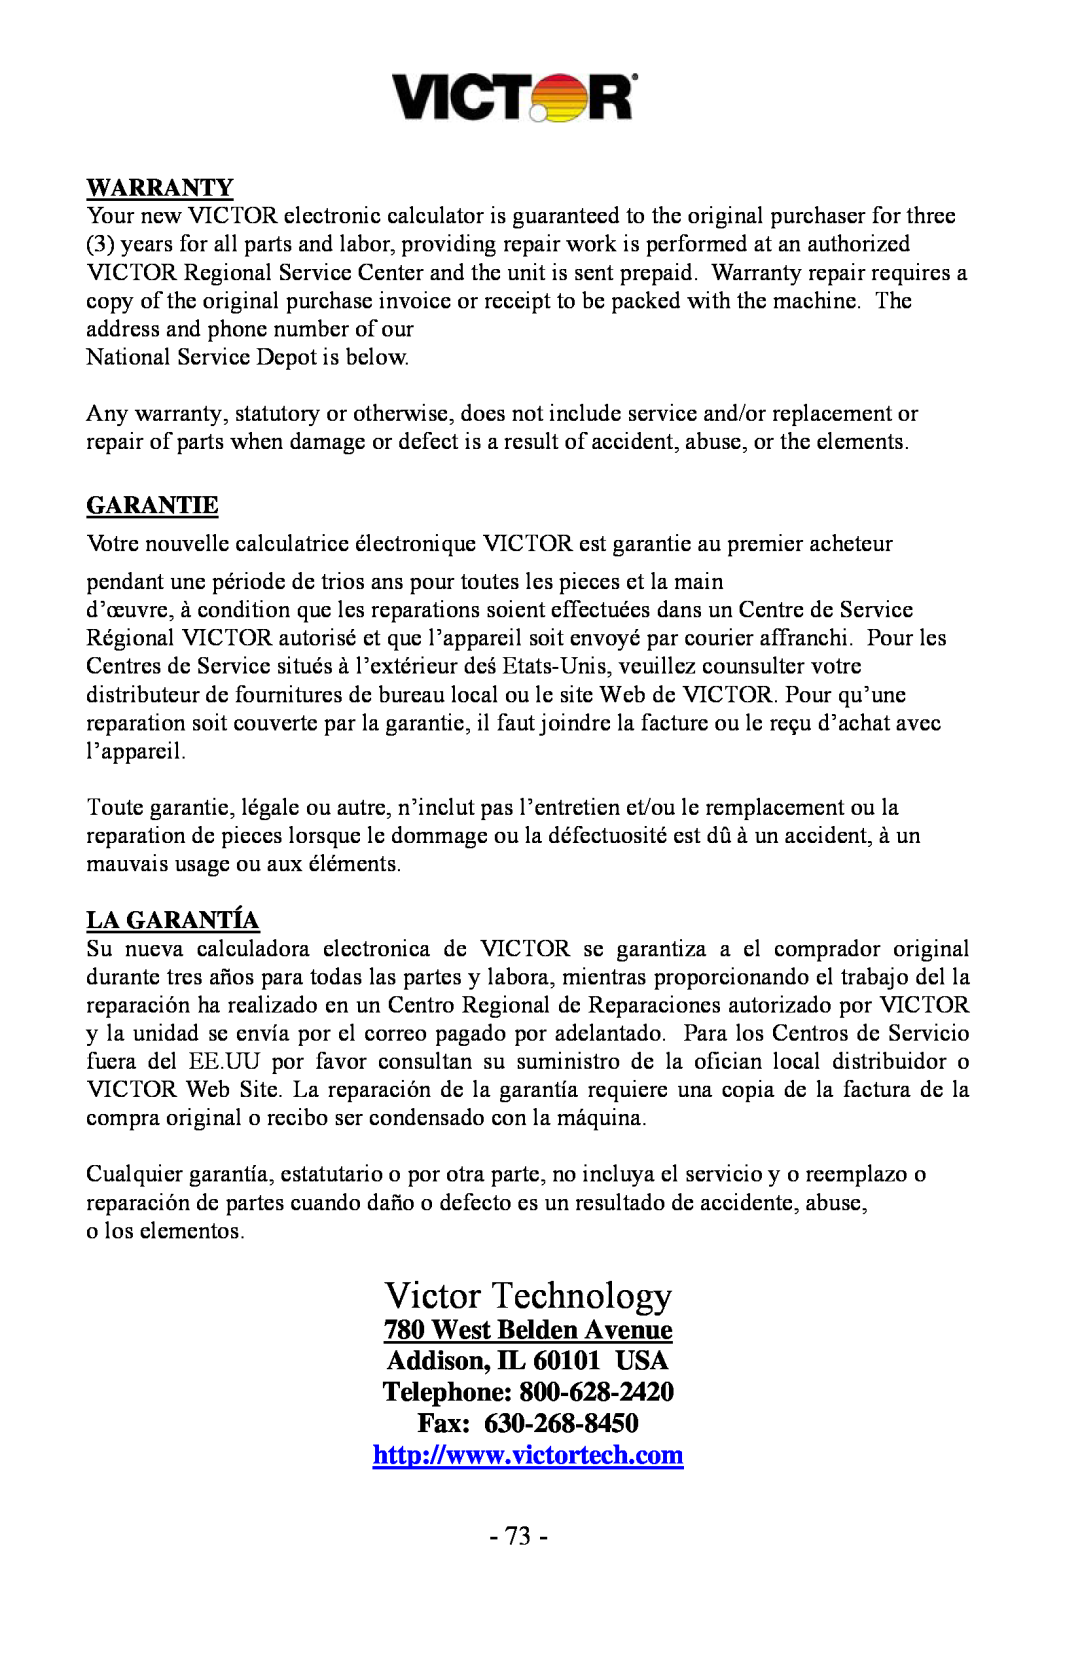 Victor 1530-6, 1560-6, 1570-6 manual Victor Technology, Warranty, Garantie, La Garantía 